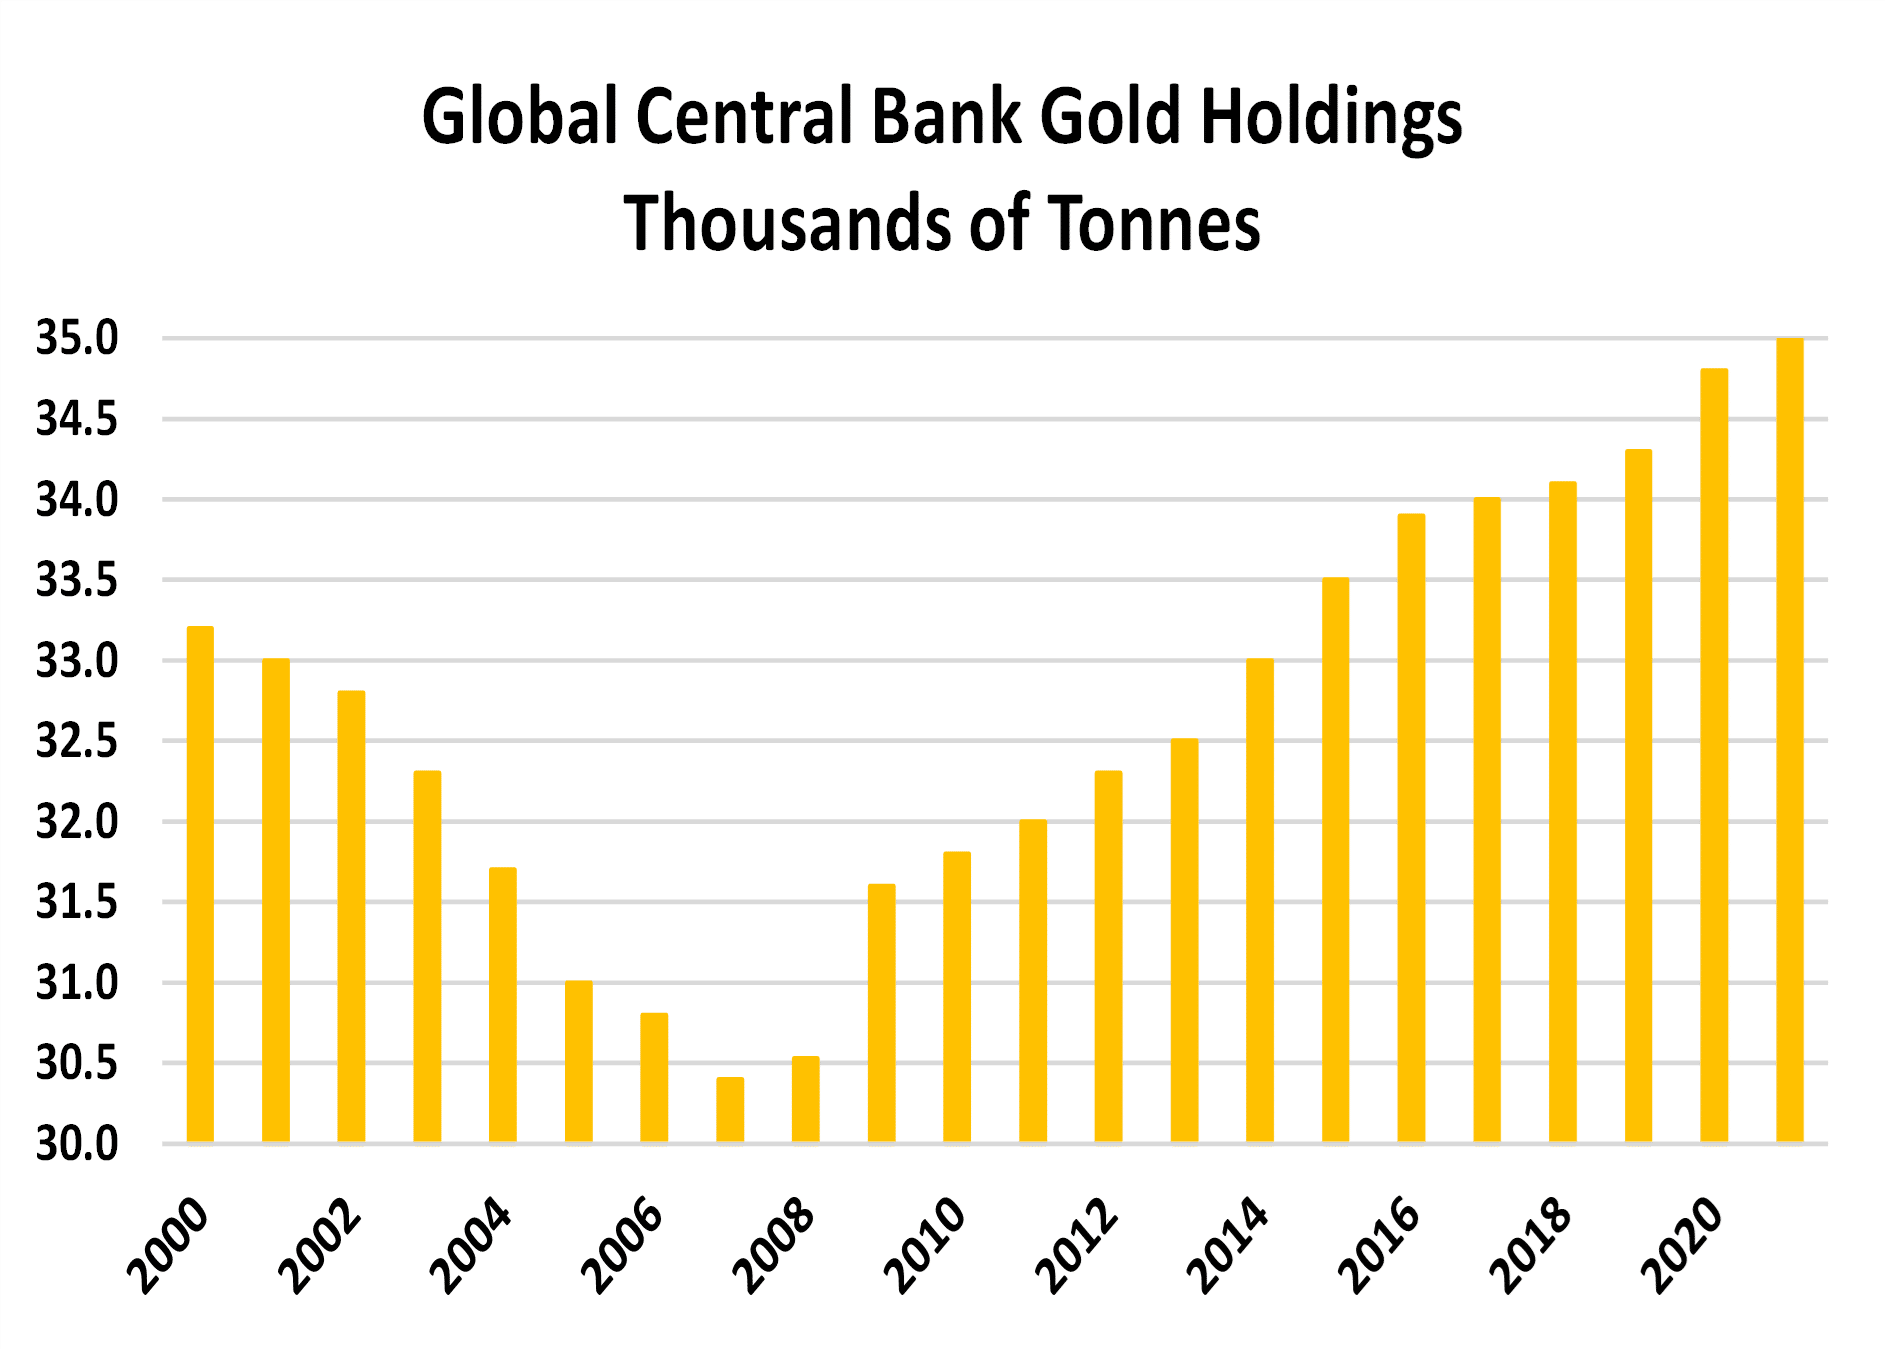 Reservas globales de oro en bancos centrales - Miles de toneladas